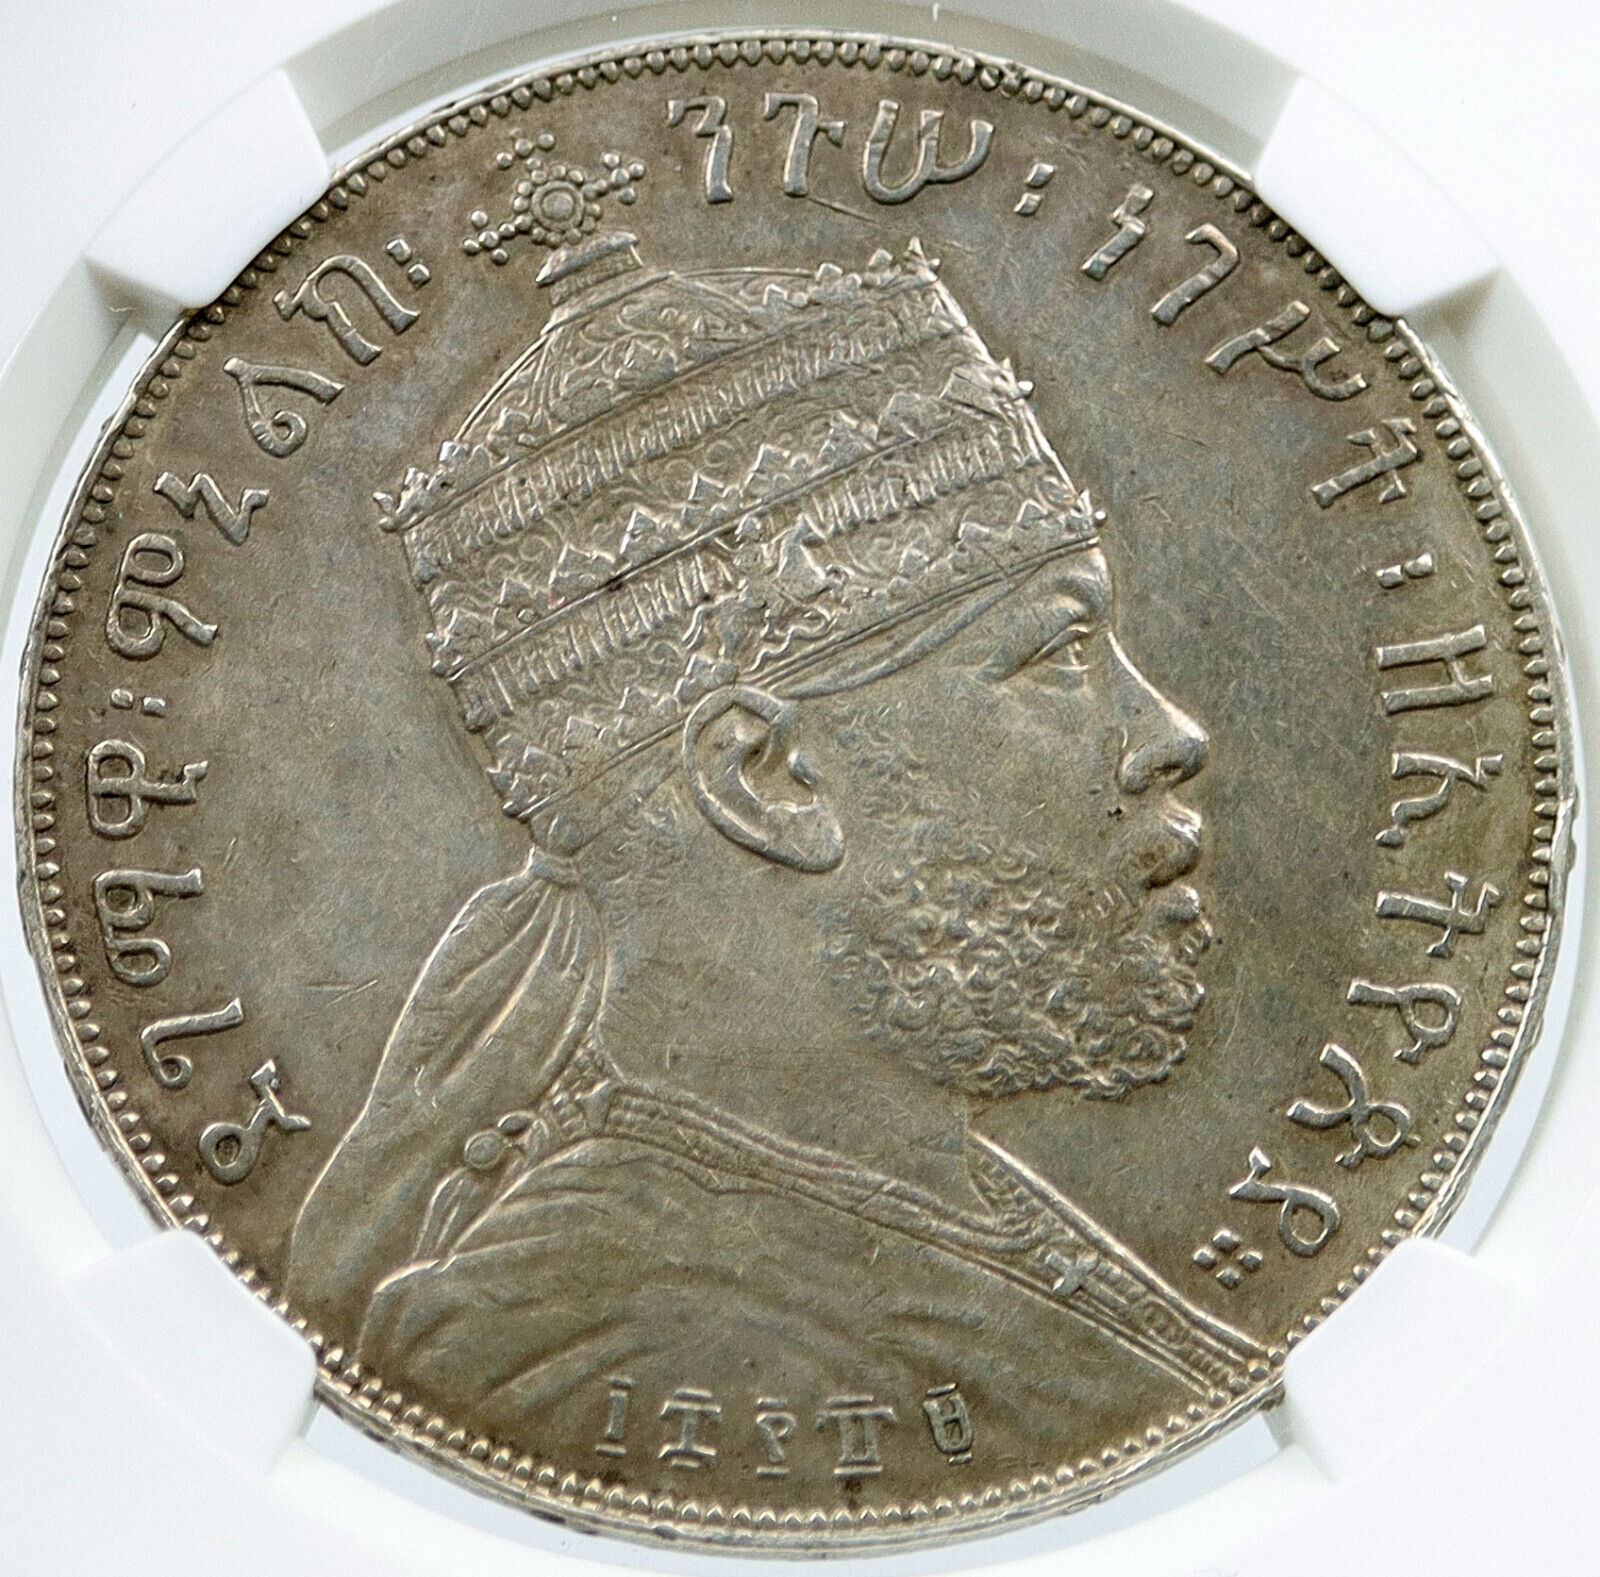 1889 ETHIOPIA Emperor Menelik II I JUDEA LION 0.7oz Silver Birr Coin NGC i117854